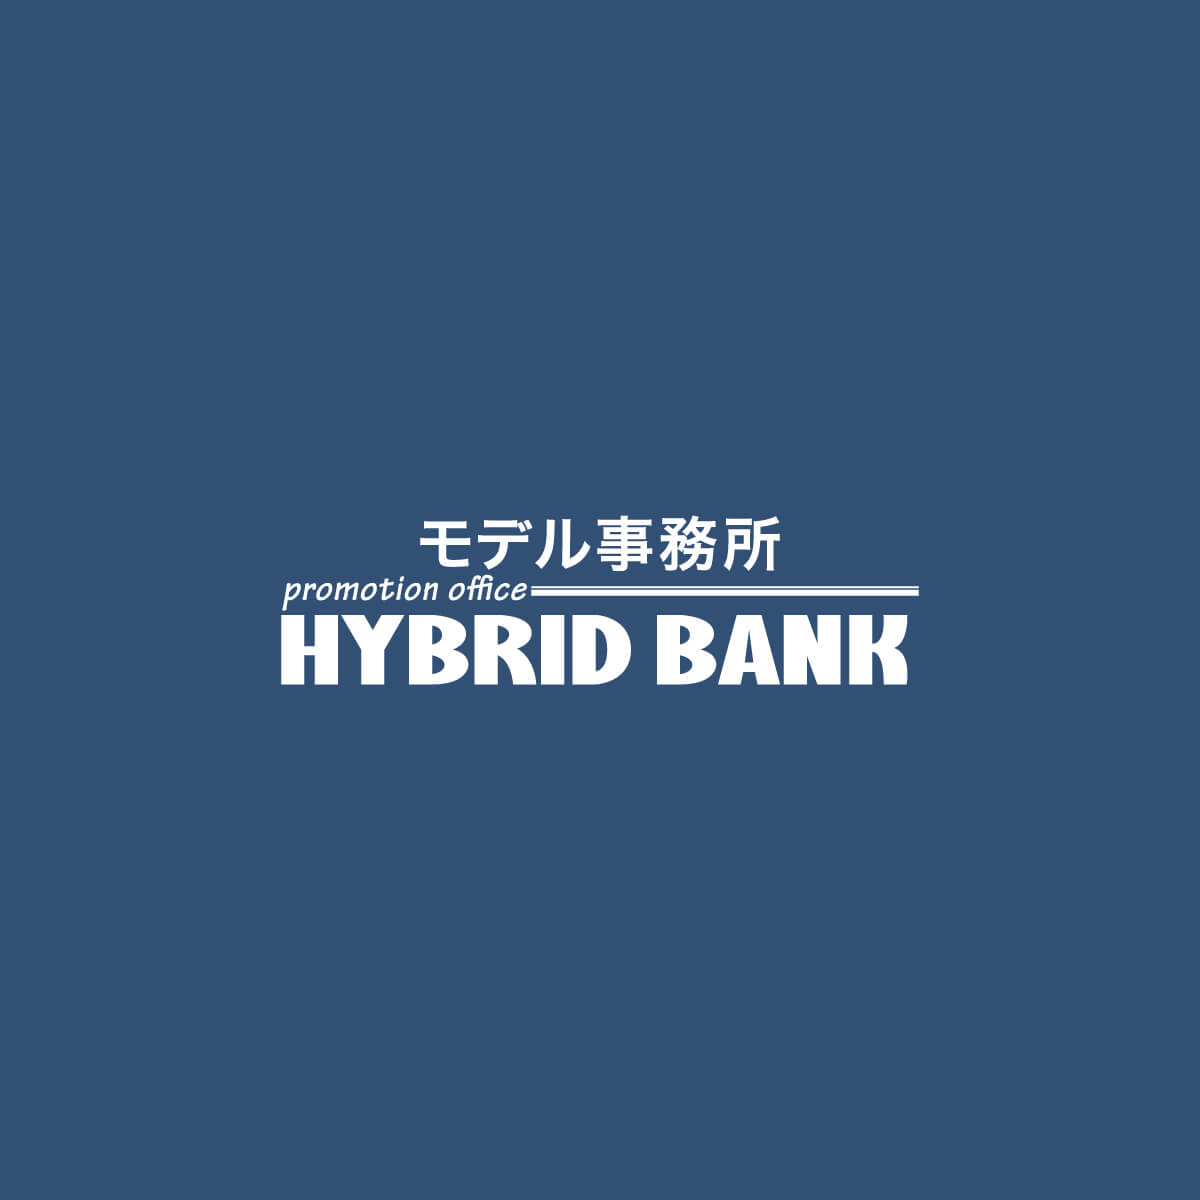 HYBRID BANK